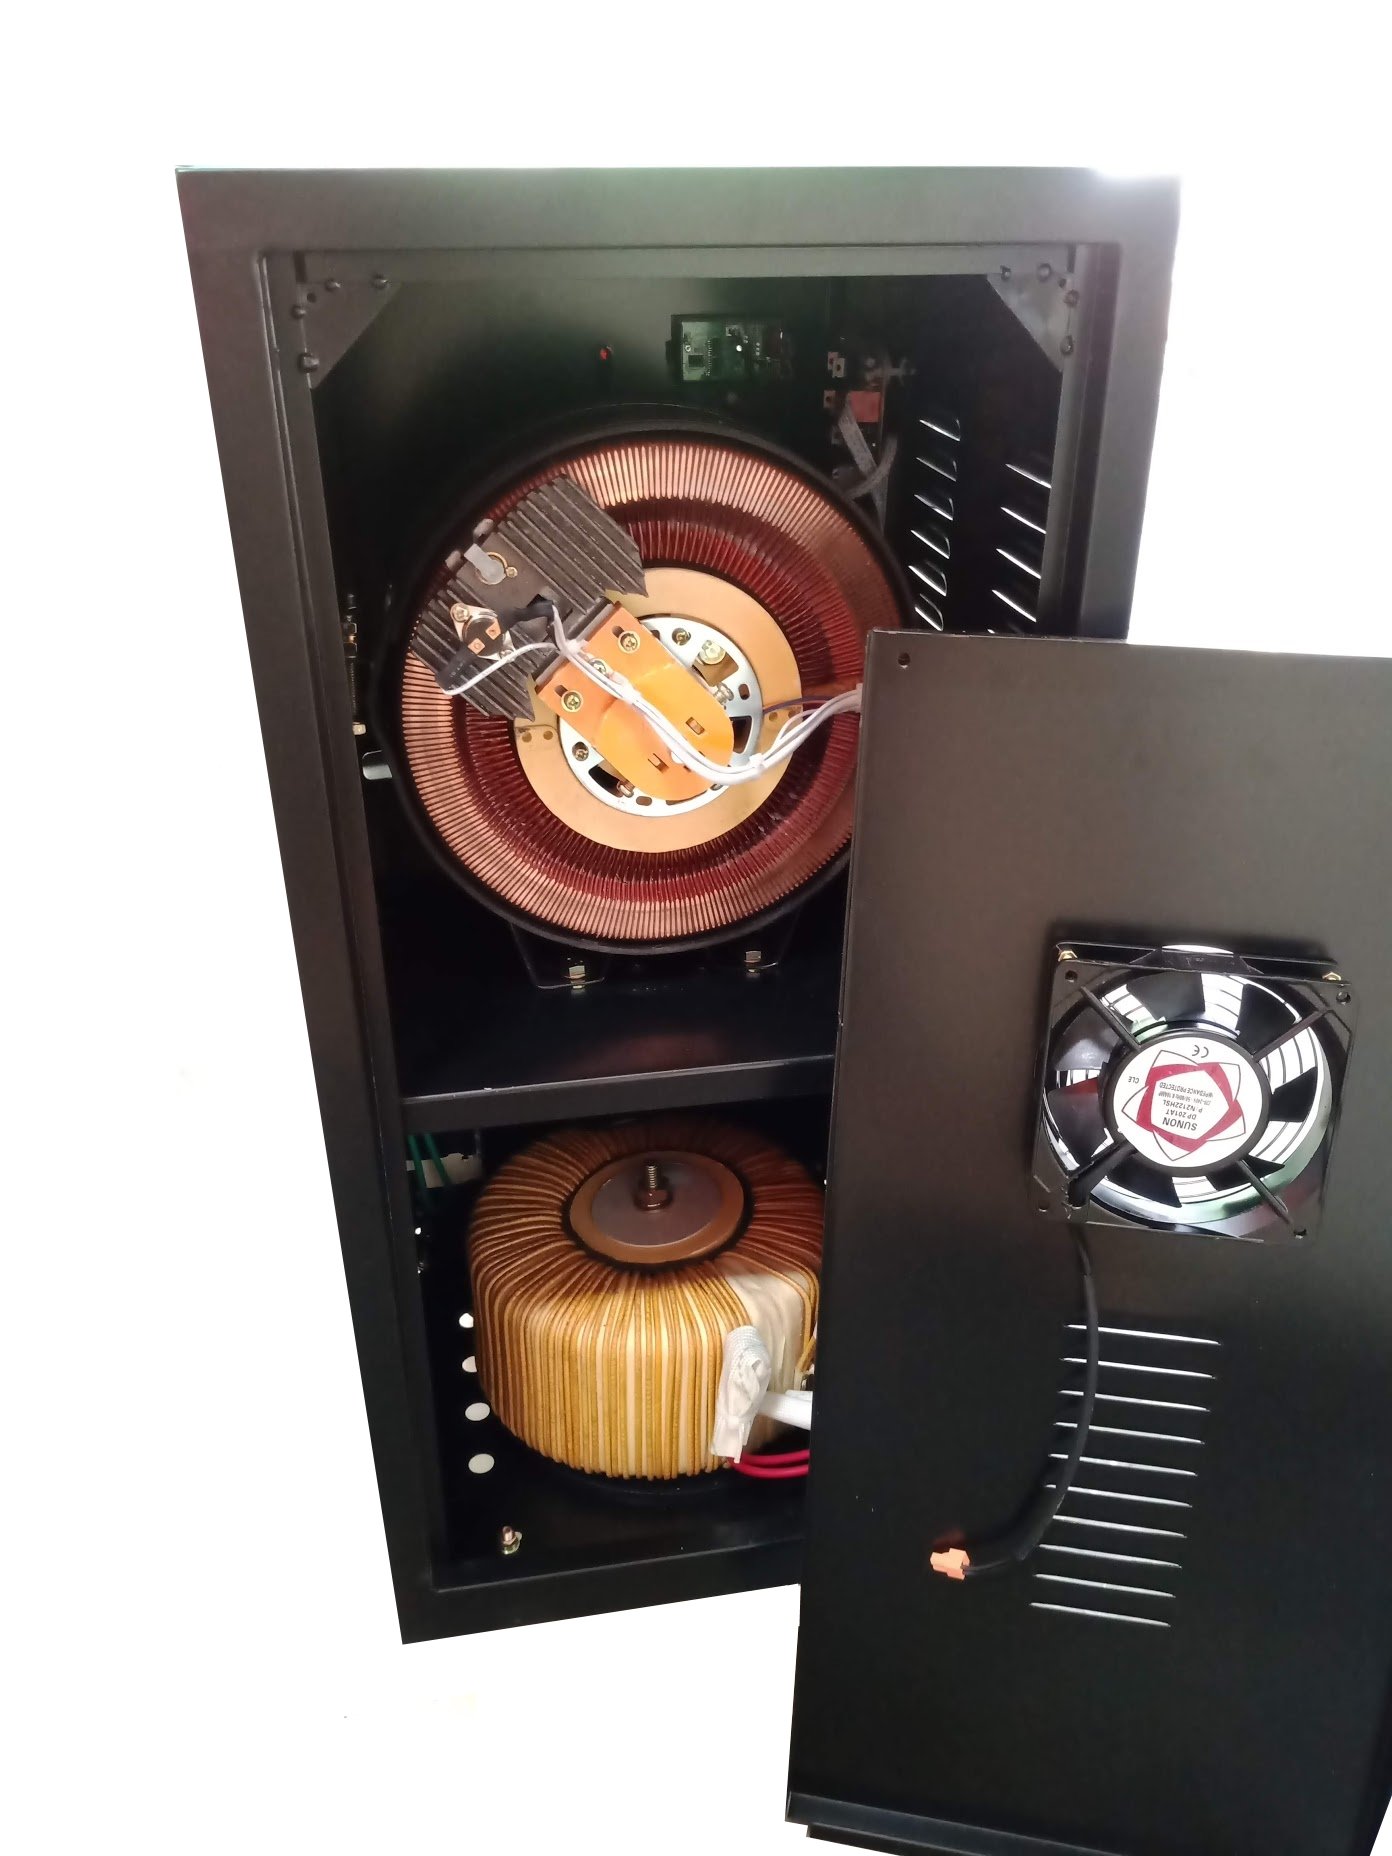 Stabilizzatore di tensione DVD5000VA LCD 160V-250V corrente 20A, Filtro EMI  25A incluso – Stabilizzatori di tensione, Gruppi elettrogeni, Inverter e UPS